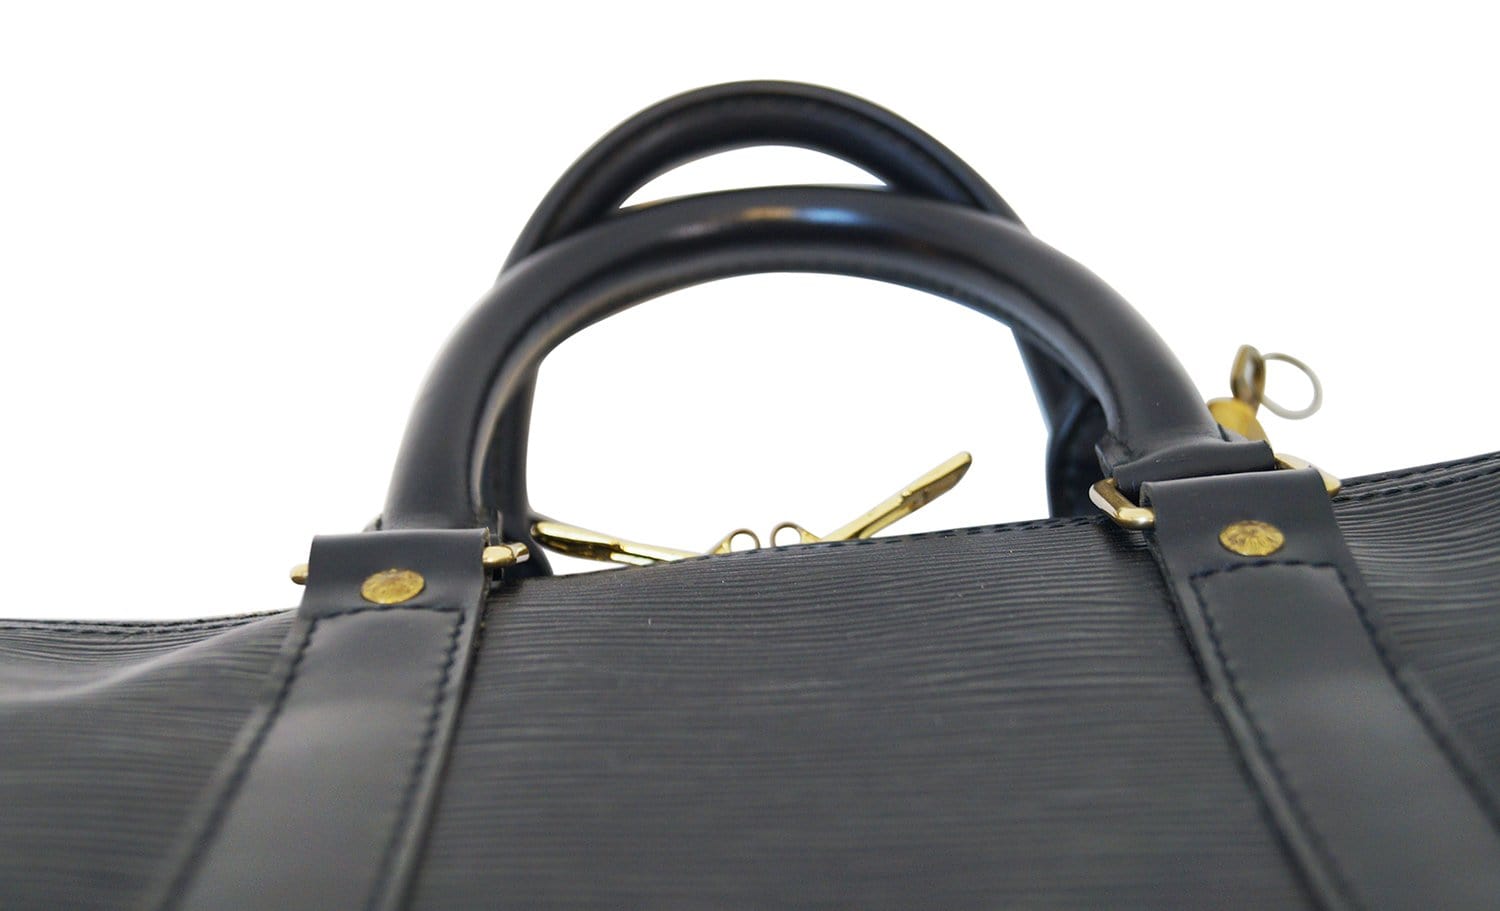 Louis Vuitton Women's EPI Speedy 30 Leather Boston Bag